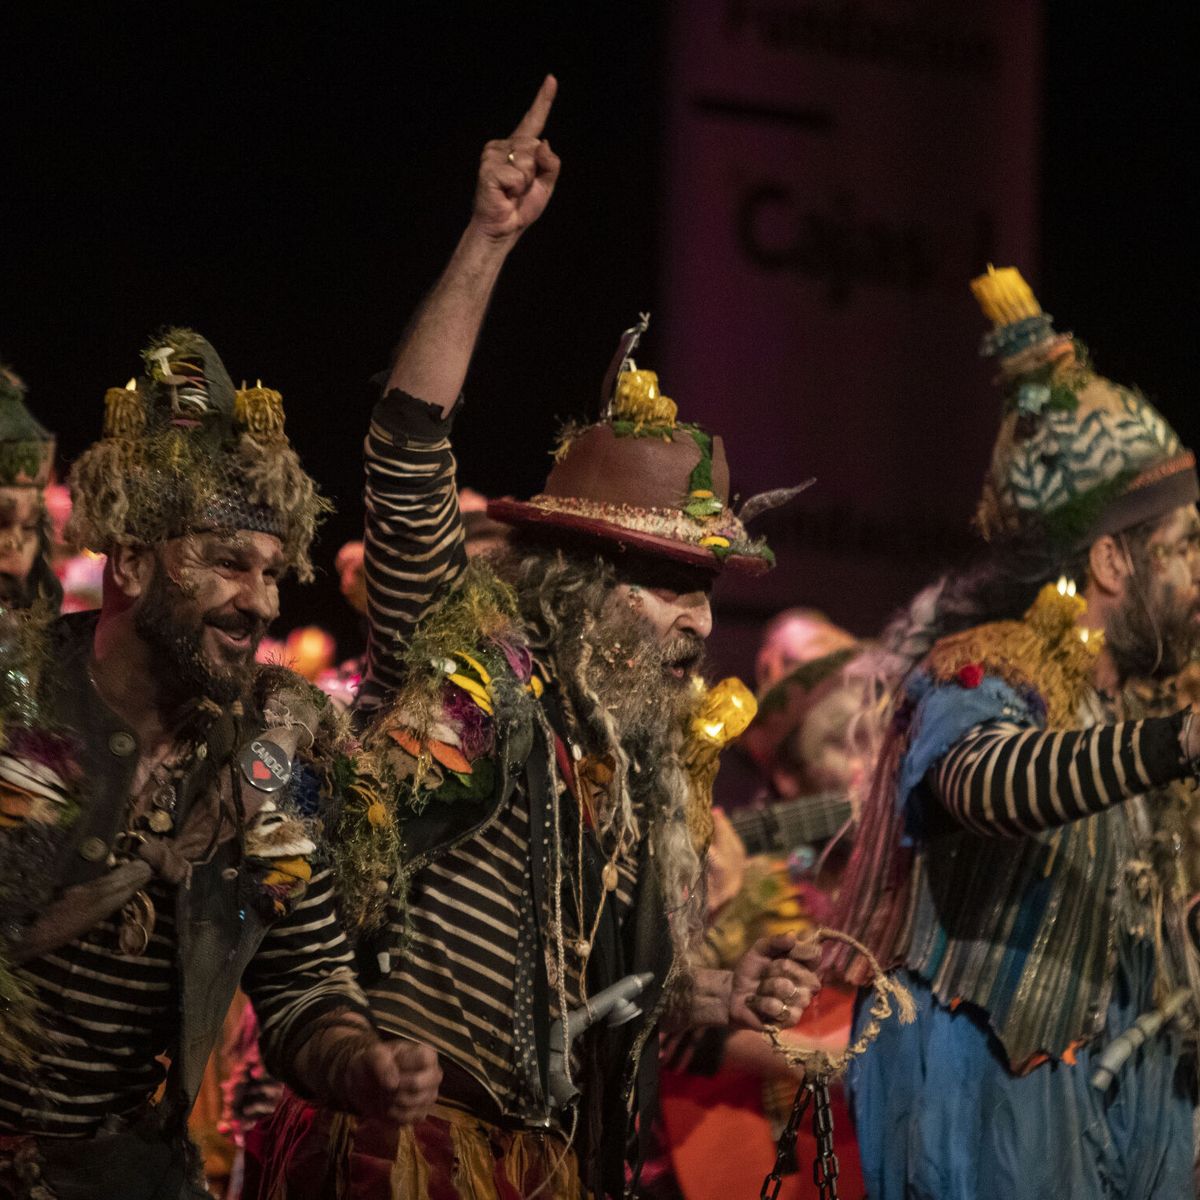 Los pitos más solidarios del Carnaval  Andalucía Información. Todas las  noticias de Cádiz